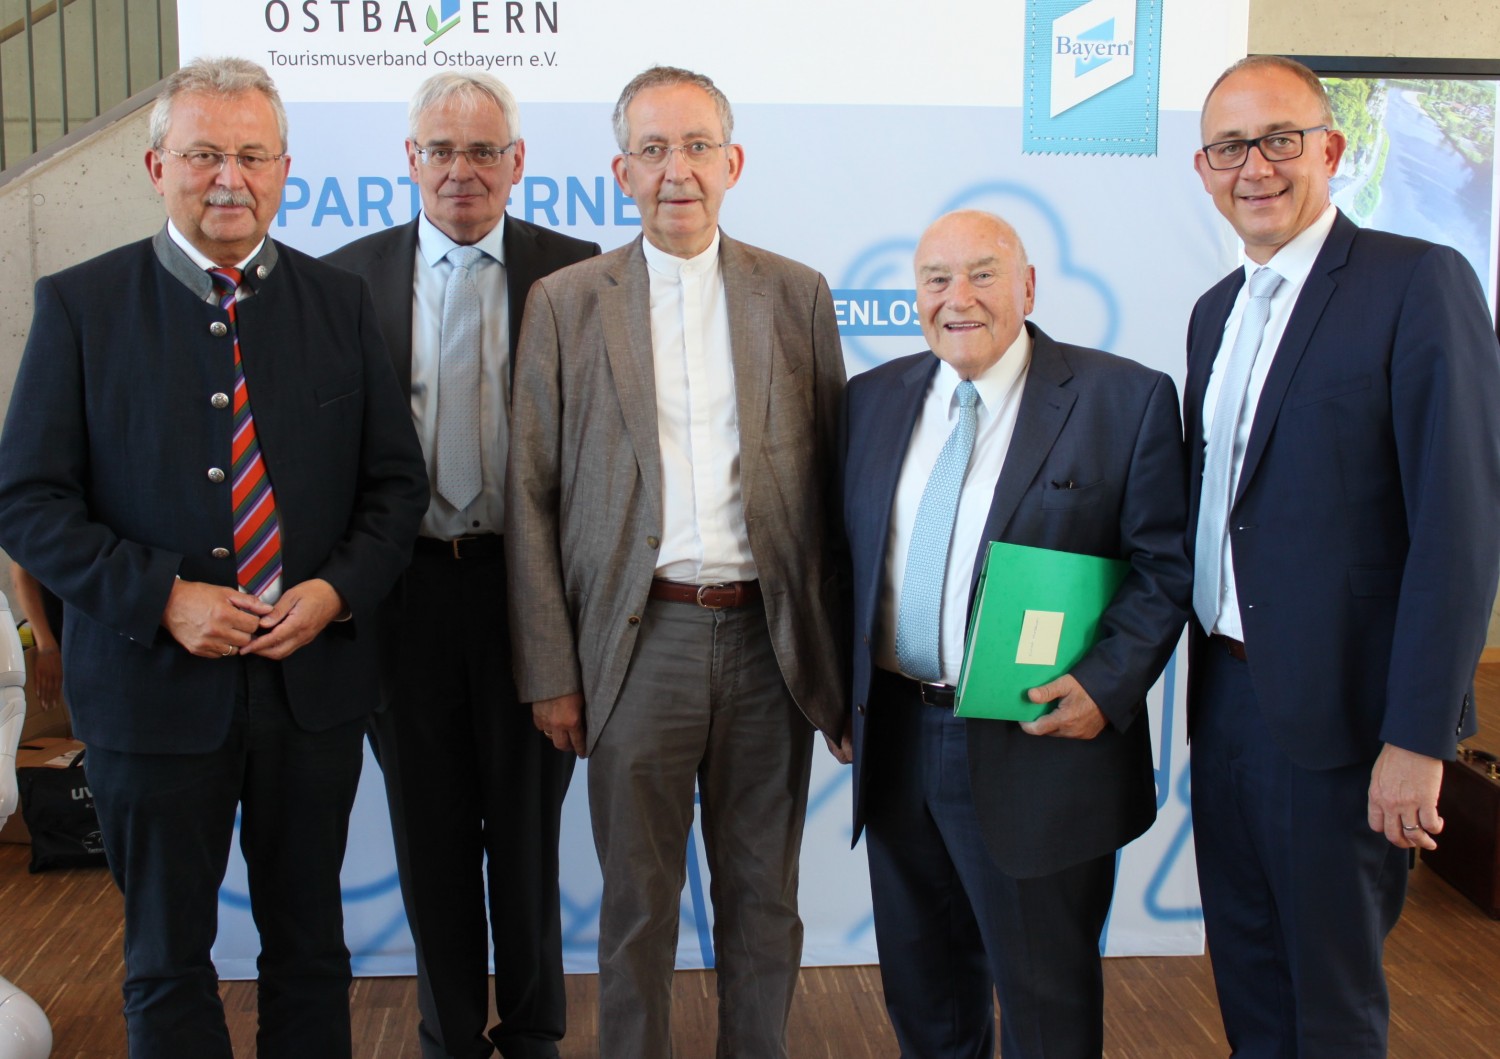 Ehrenmitglieder des Tourismusverbandes Ostbayern